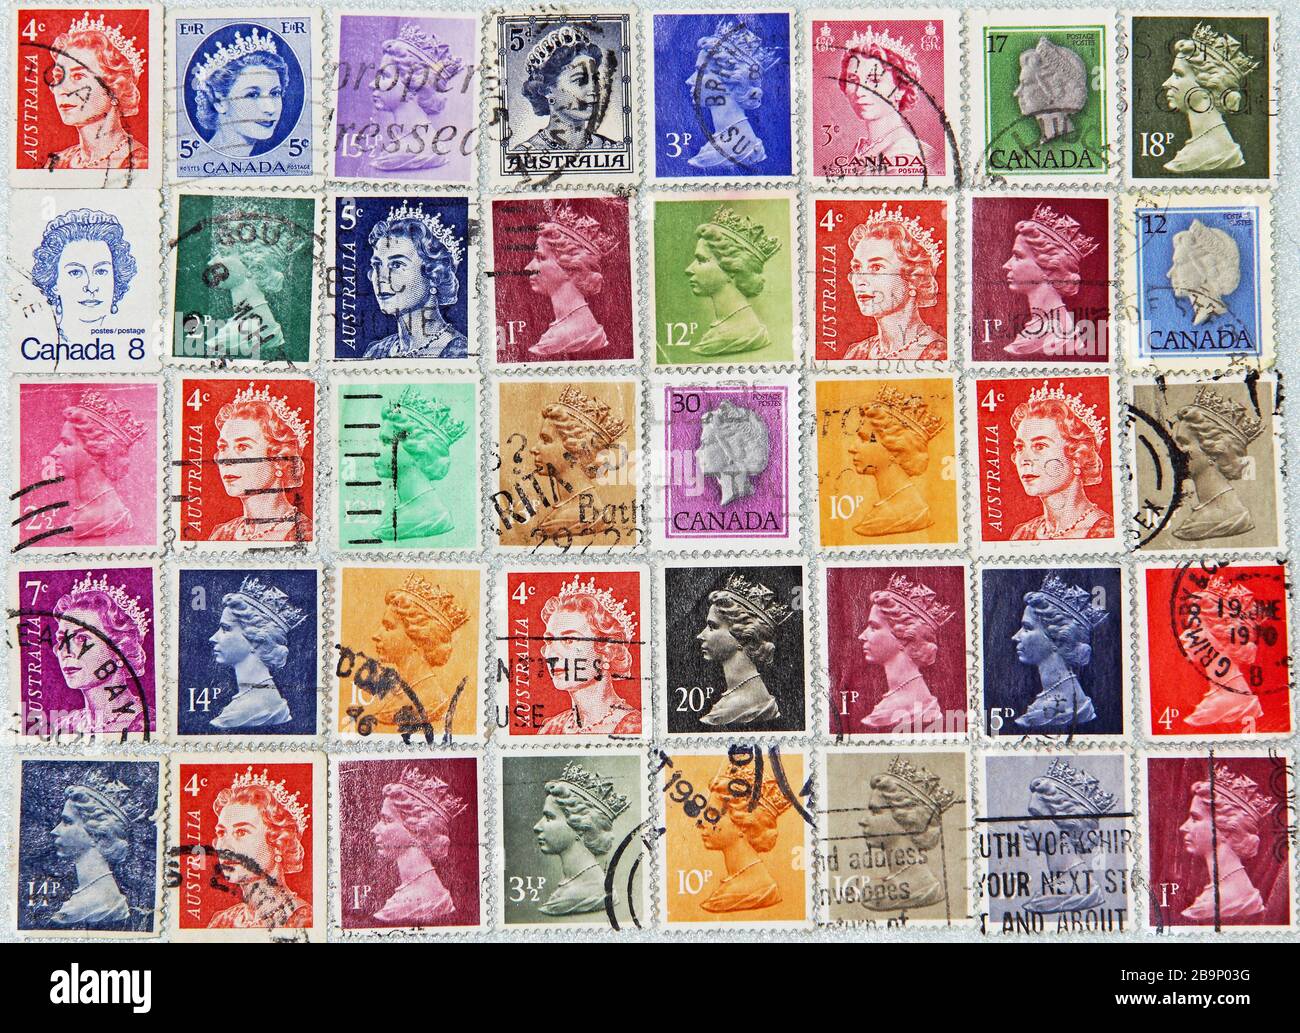 Francobolli di paesi del Commonwealth britannico con immagine di sua Maestà la Regina Elisabetta. Foto Stock